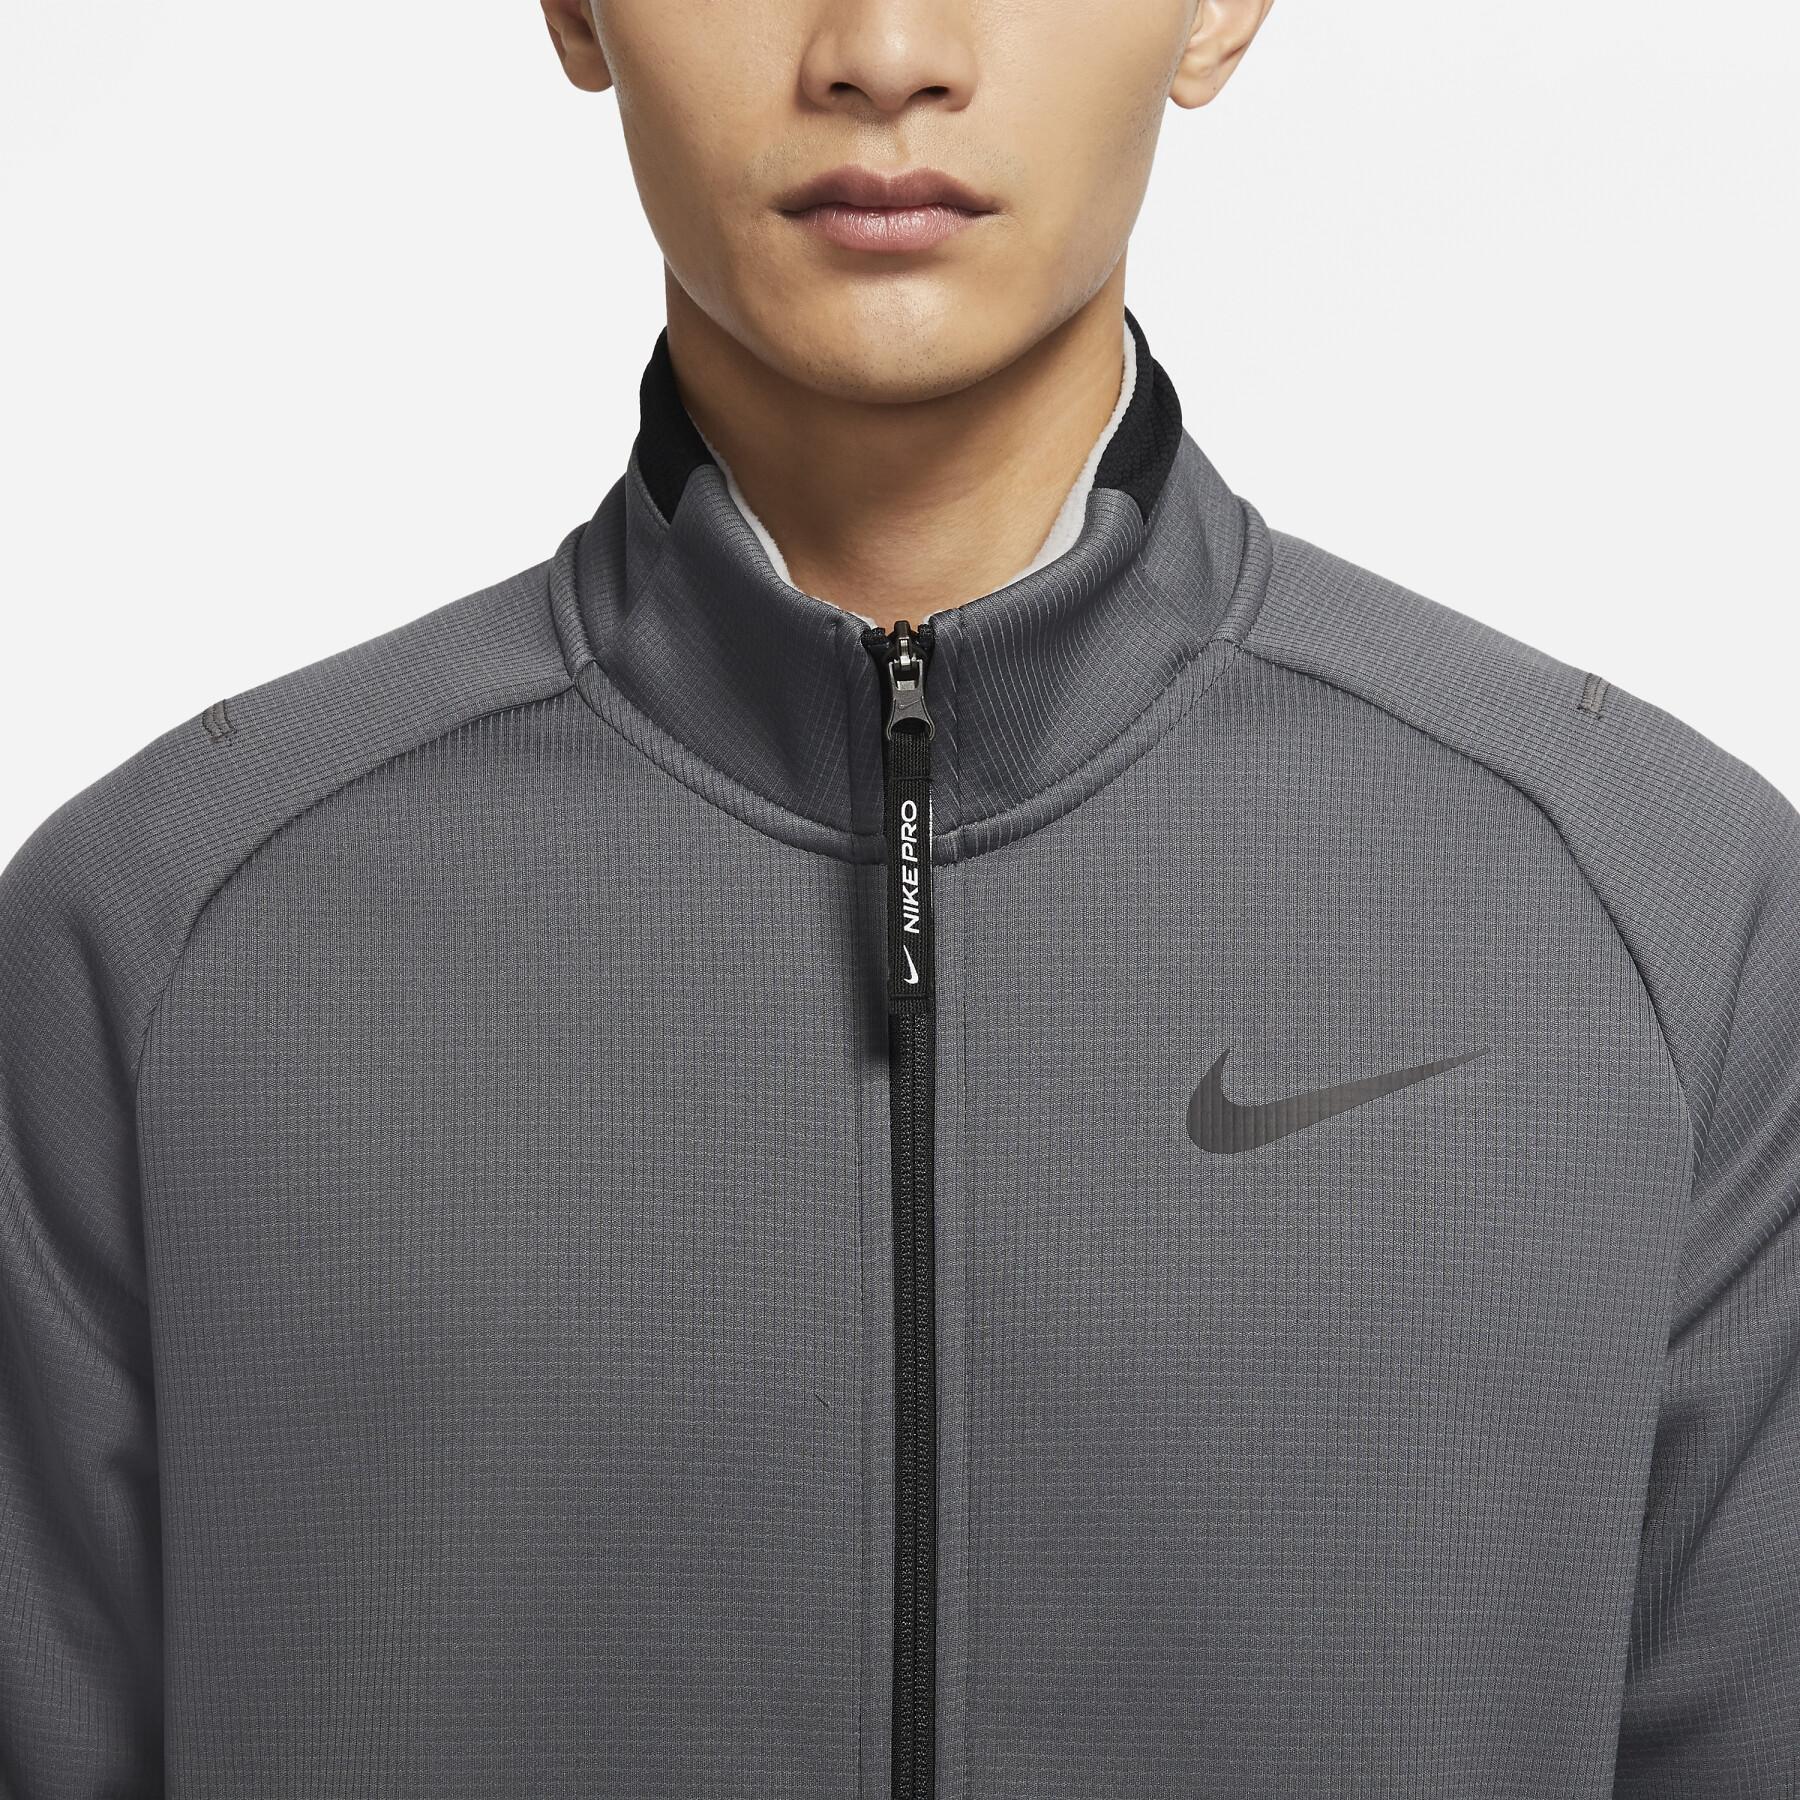 Sweat jacket 1/2 zip Nike Therma-Fit SPHR